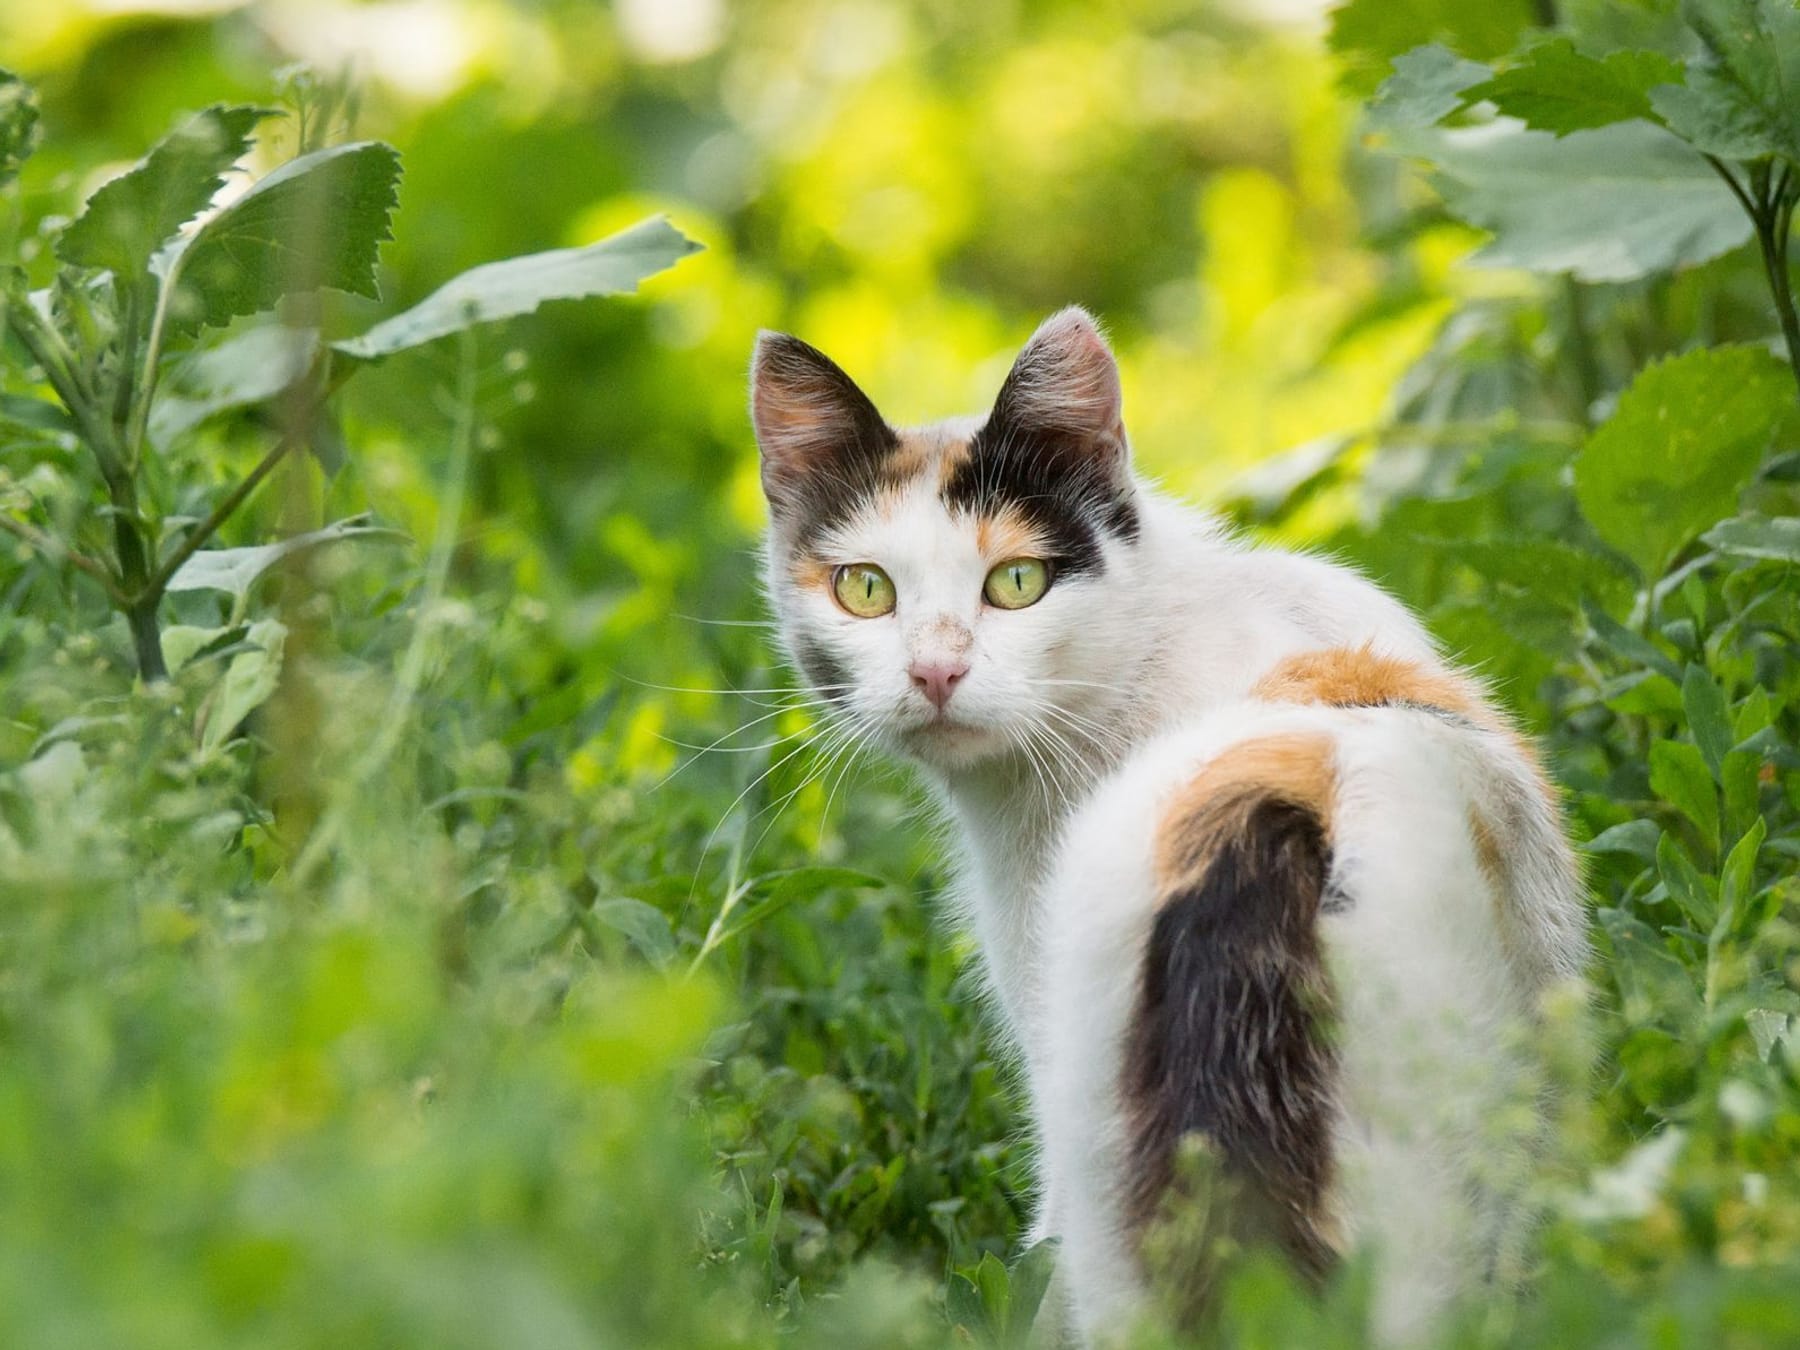 Katzen vertreiben: Was ist illegal und was dürfen Sie tun?